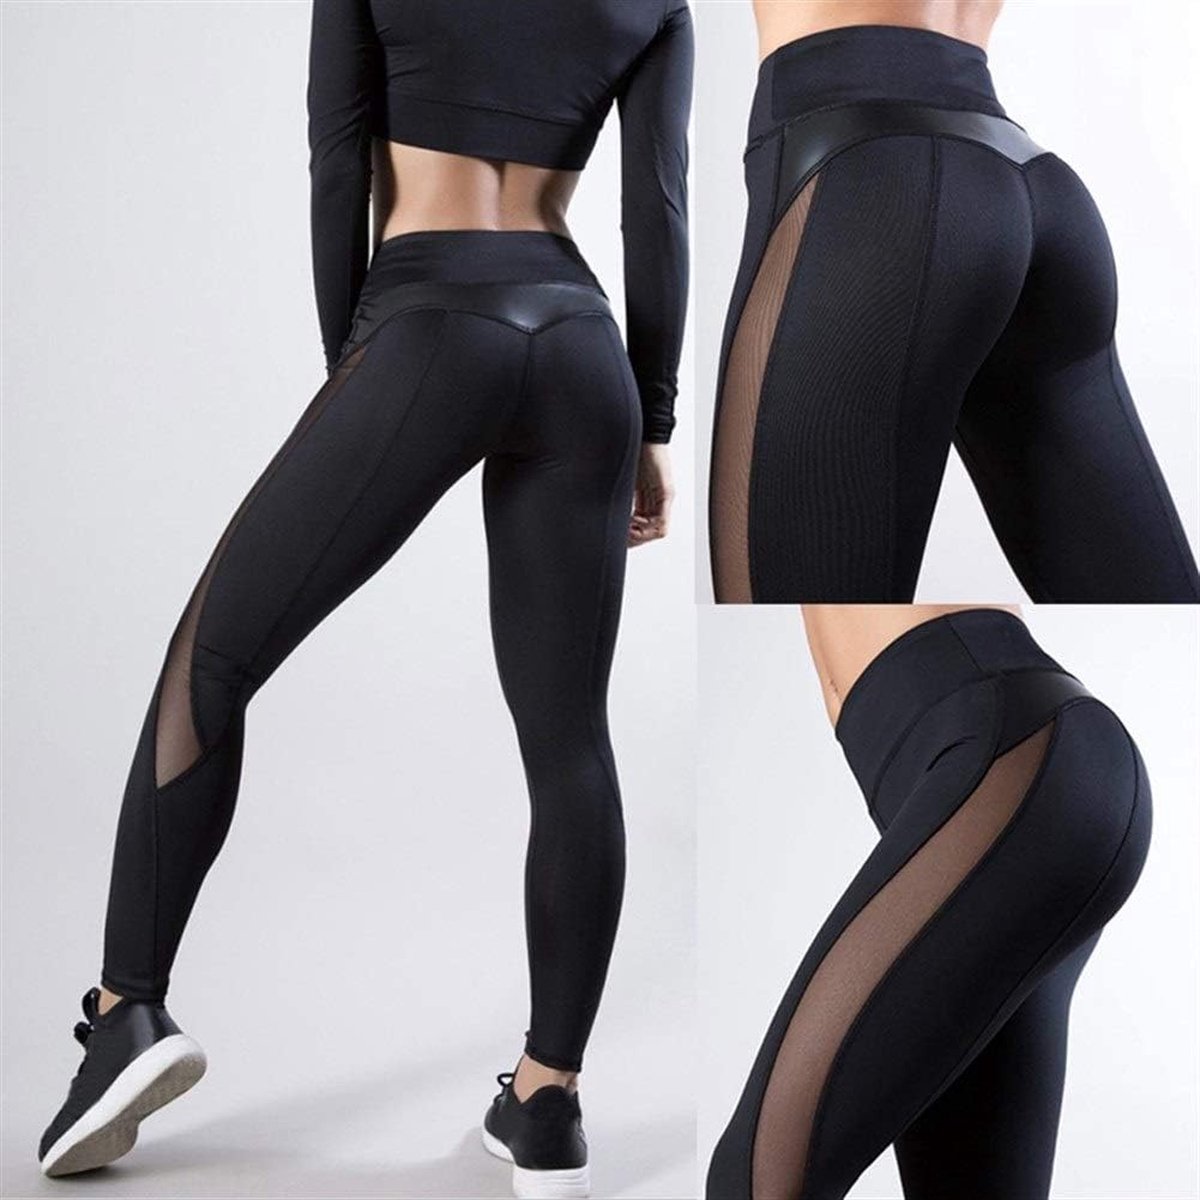 Sexy yoga broek - Sportlegging - Yoga - mesh naadloze - Fitness Gym - Scrunch Butt - Dames Legging - Sportkleding broek - Fashion legging - Broeken - Gym Sports - Legging Fitness Wear - High Waist - zwart - maat S